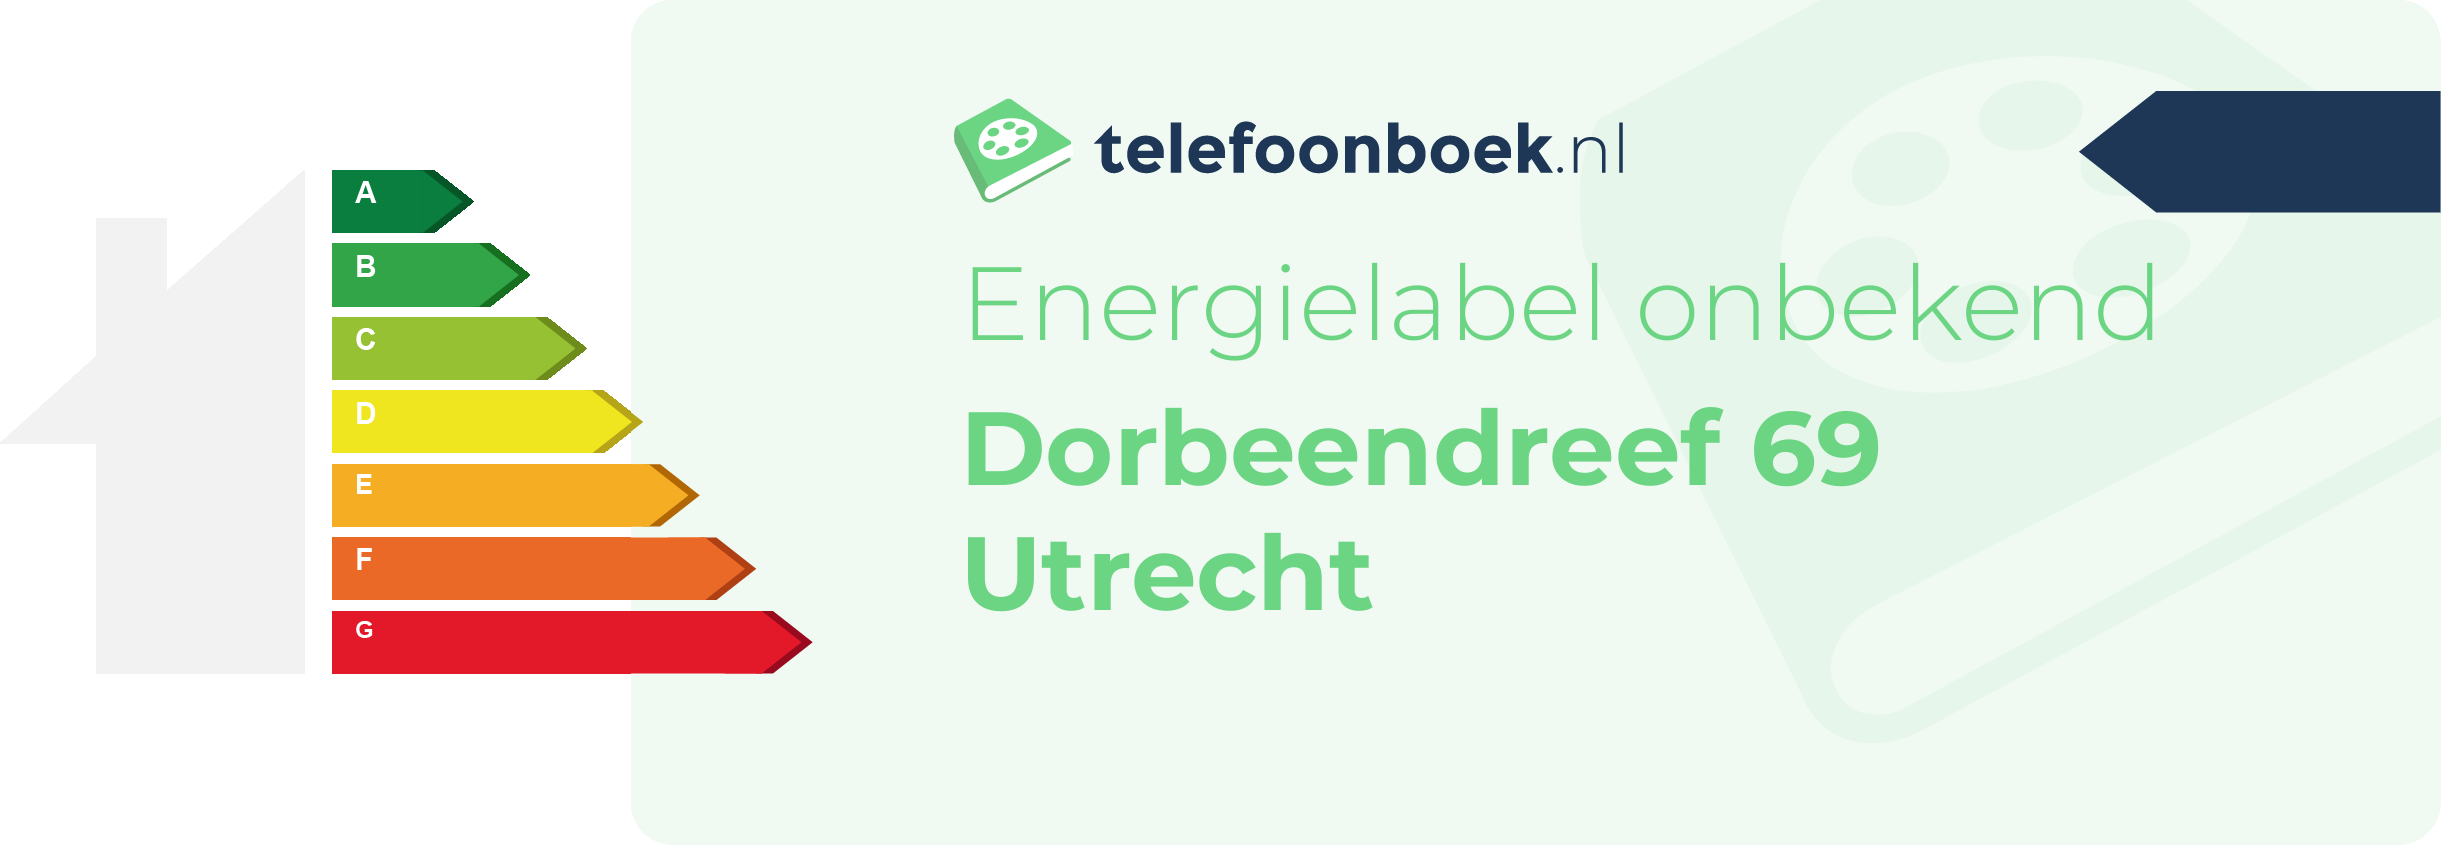 Energielabel Dorbeendreef 69 Utrecht